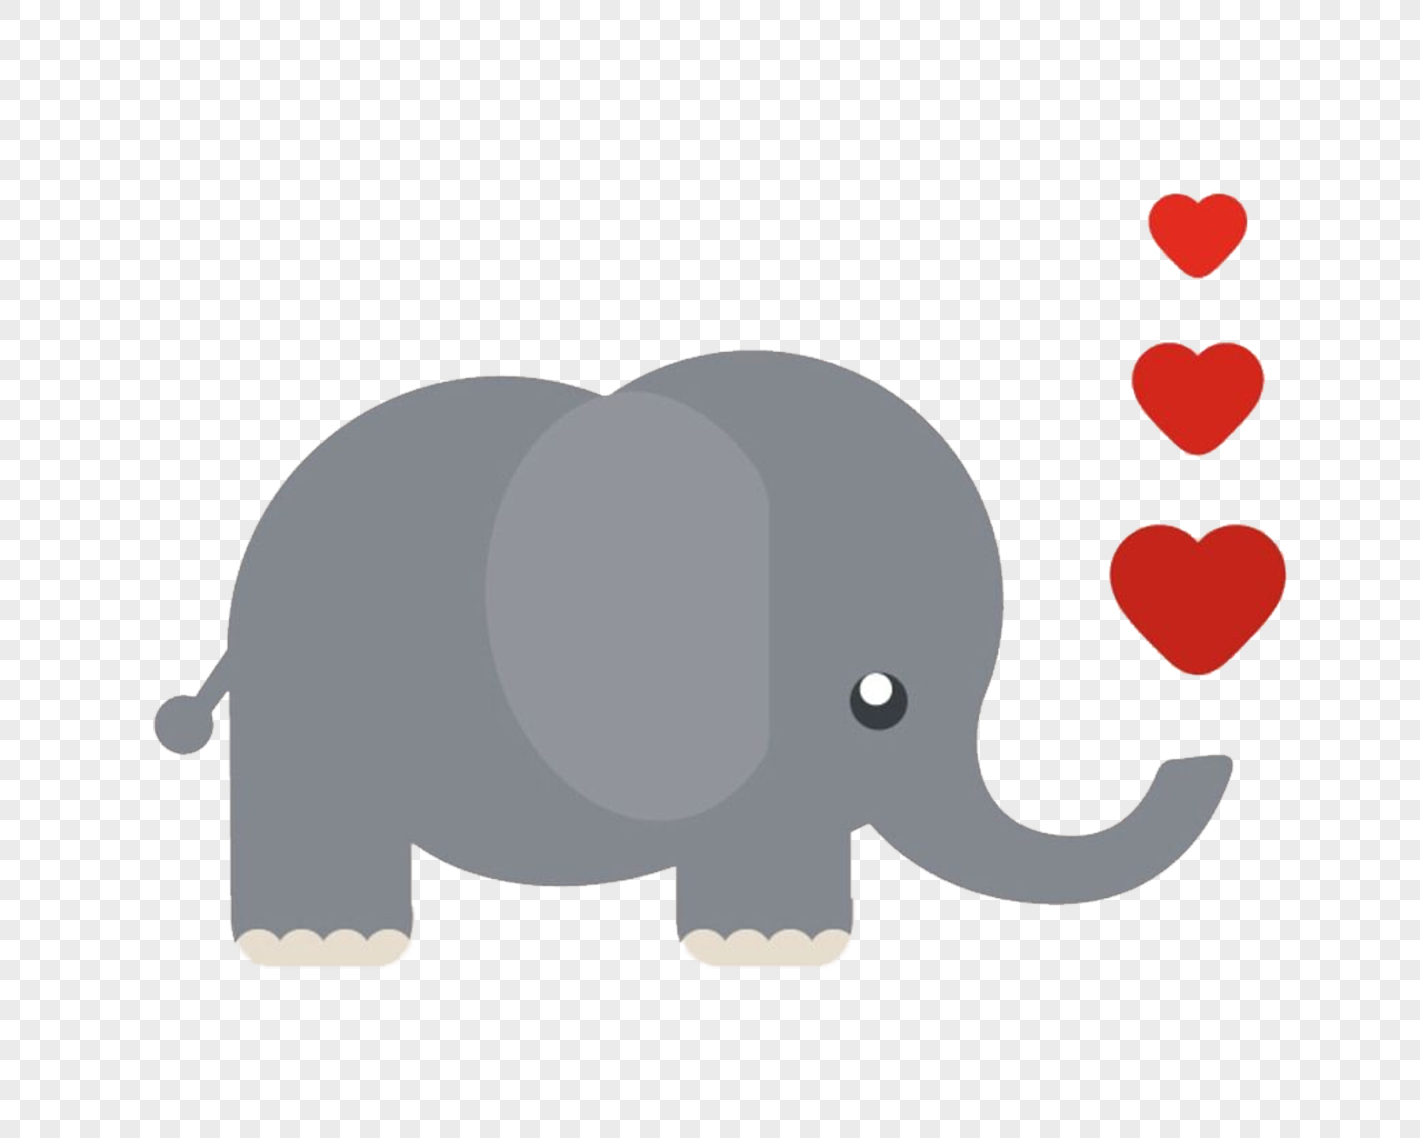 G elephant. Слон с сердечком. Слон рисунок. Слоник рисунок. Шаблон слоника для аппликации.